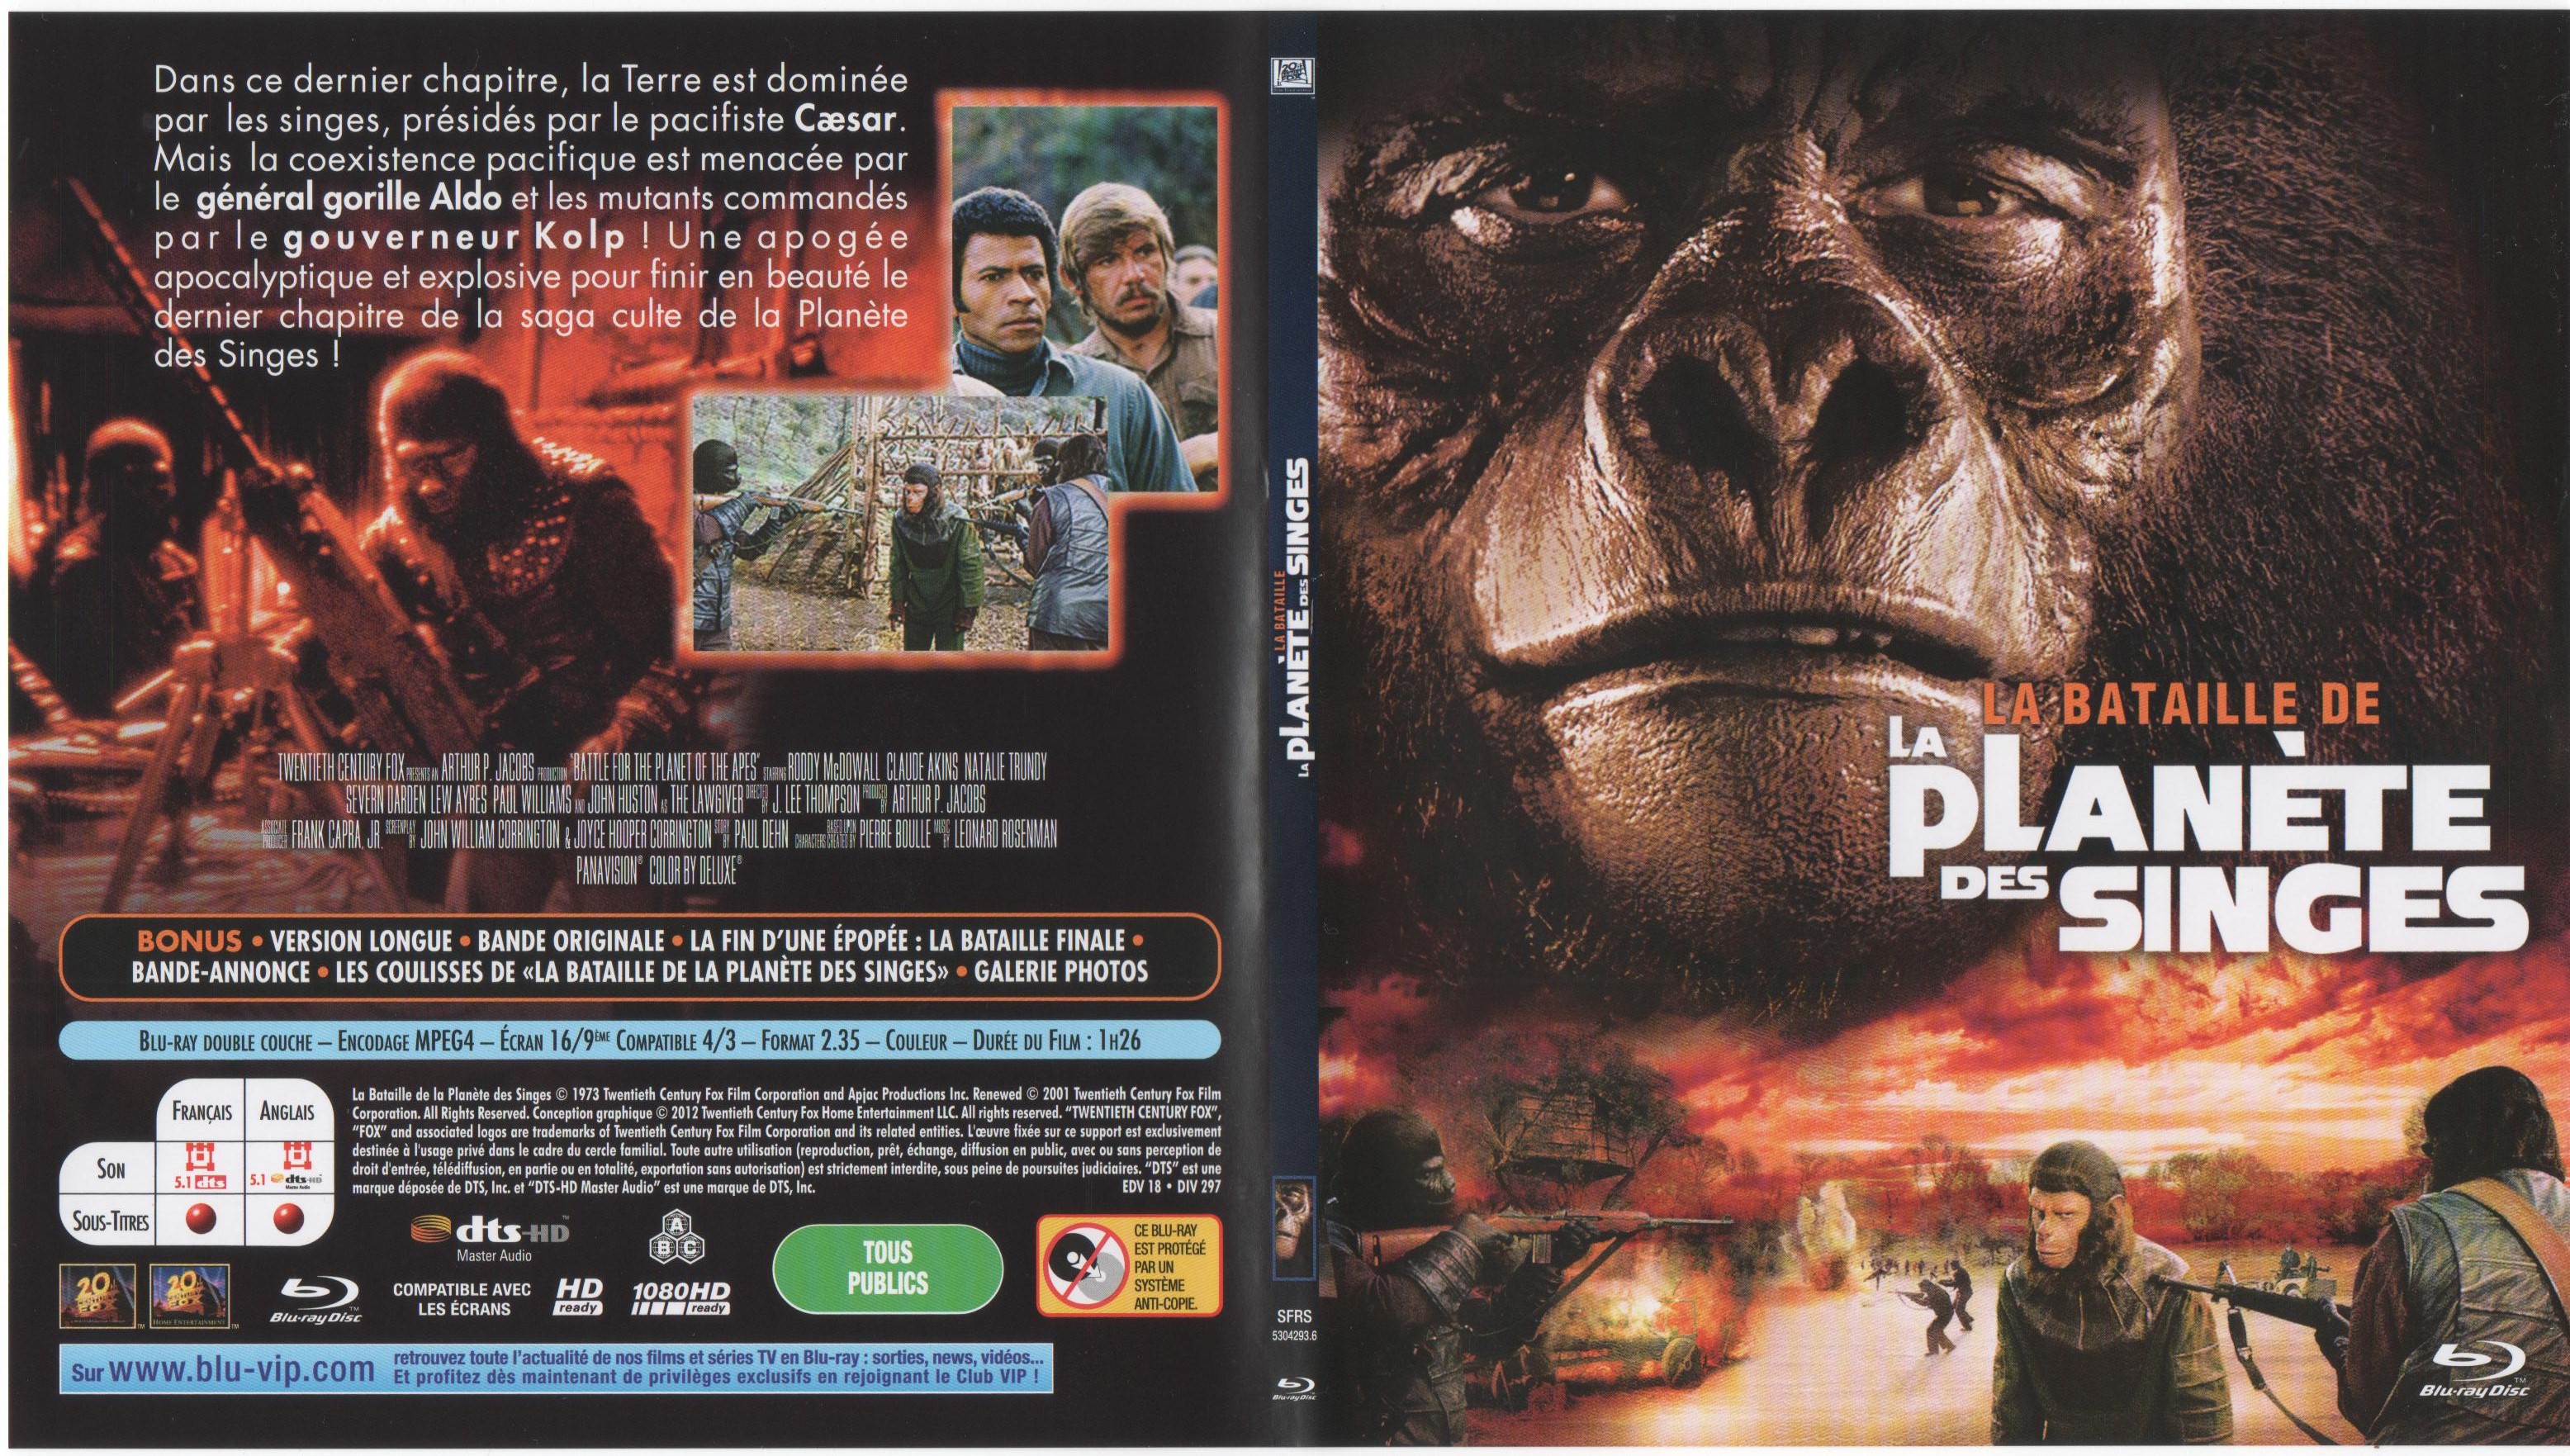 Jaquette DVD La bataille de la planete des singes (BLU-RAY) v2